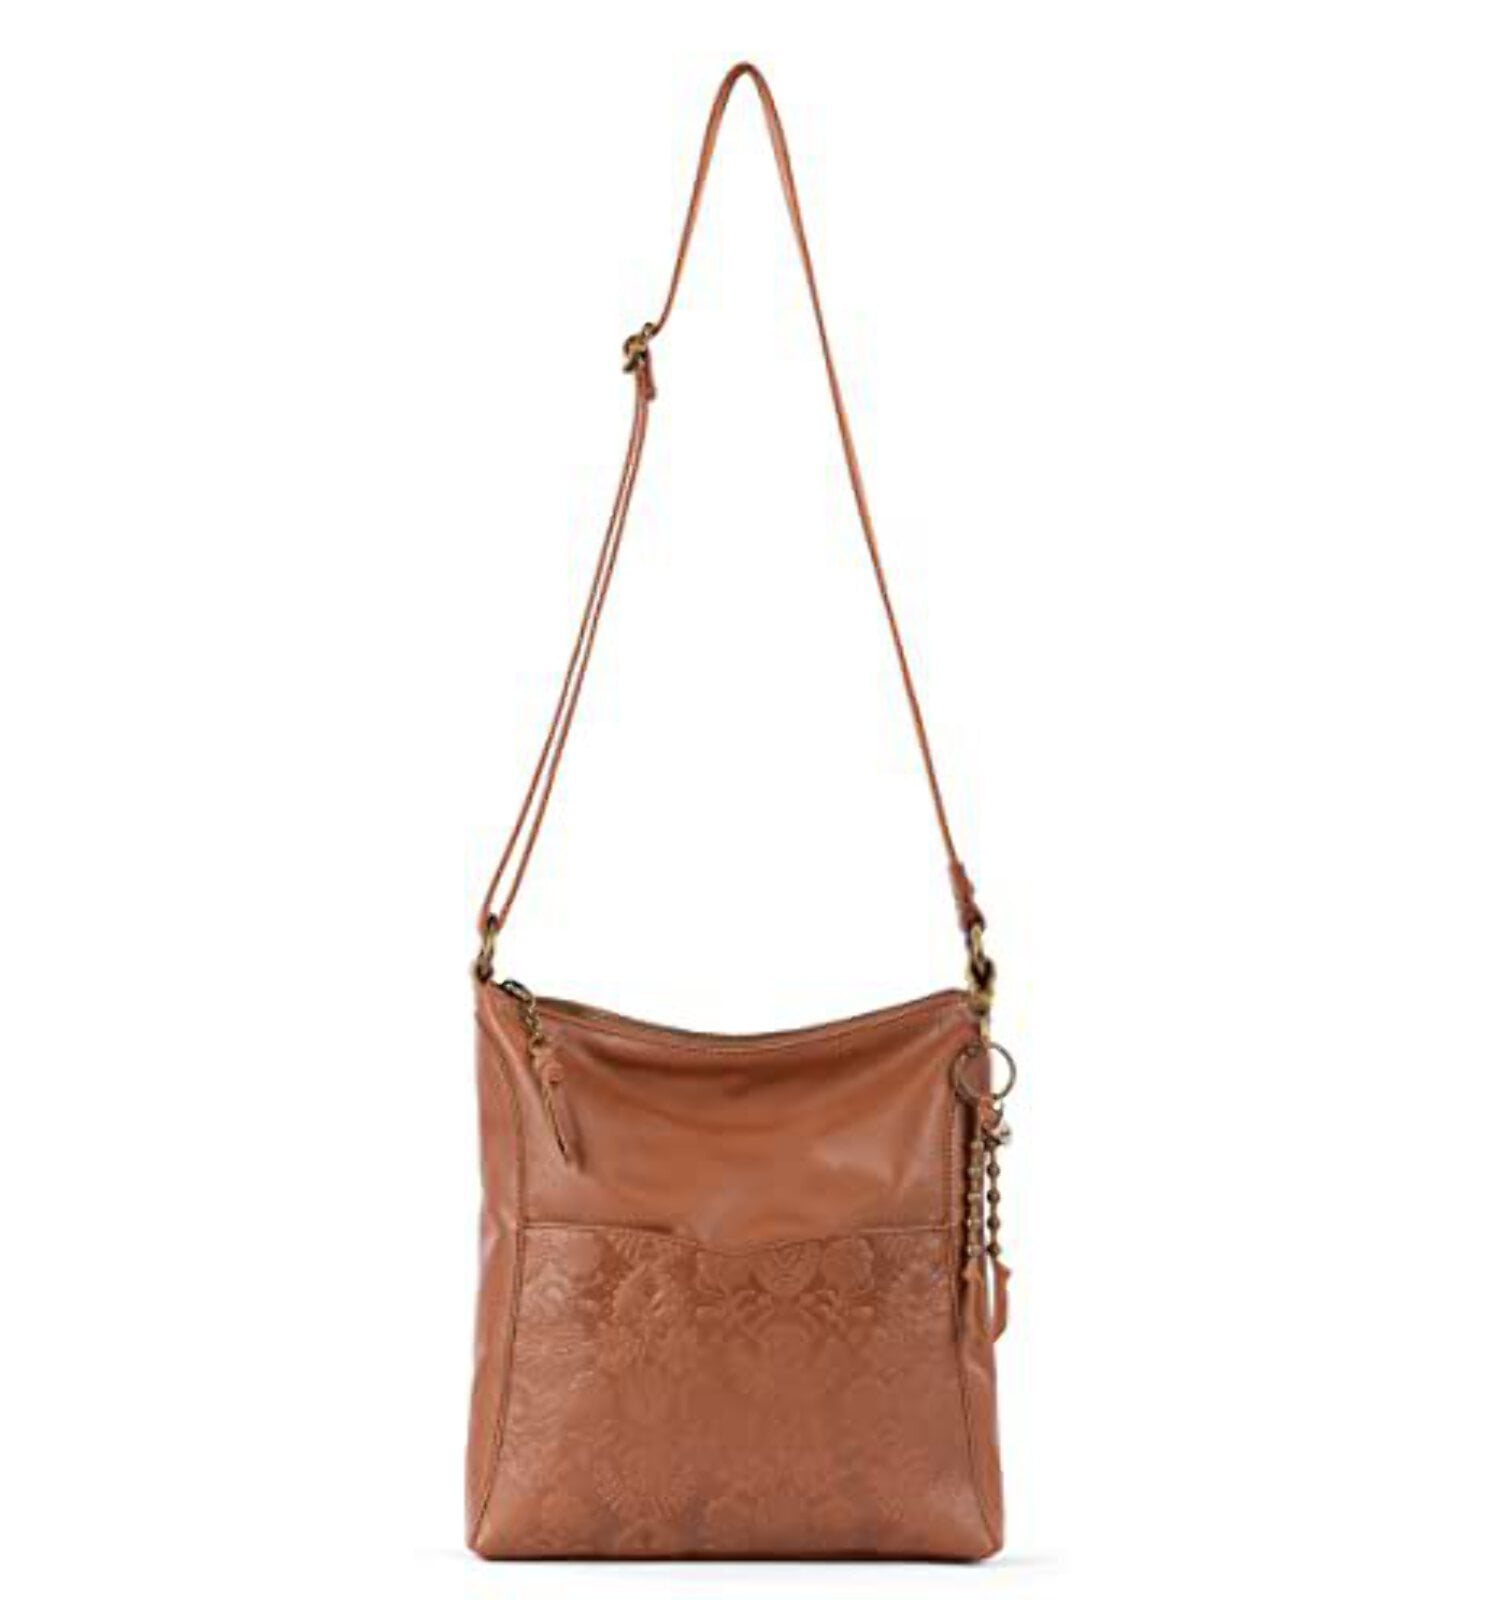 The SAK Black Leather Shoulder Bag Purse,adjustable Strap, Multi pocket |  eBay